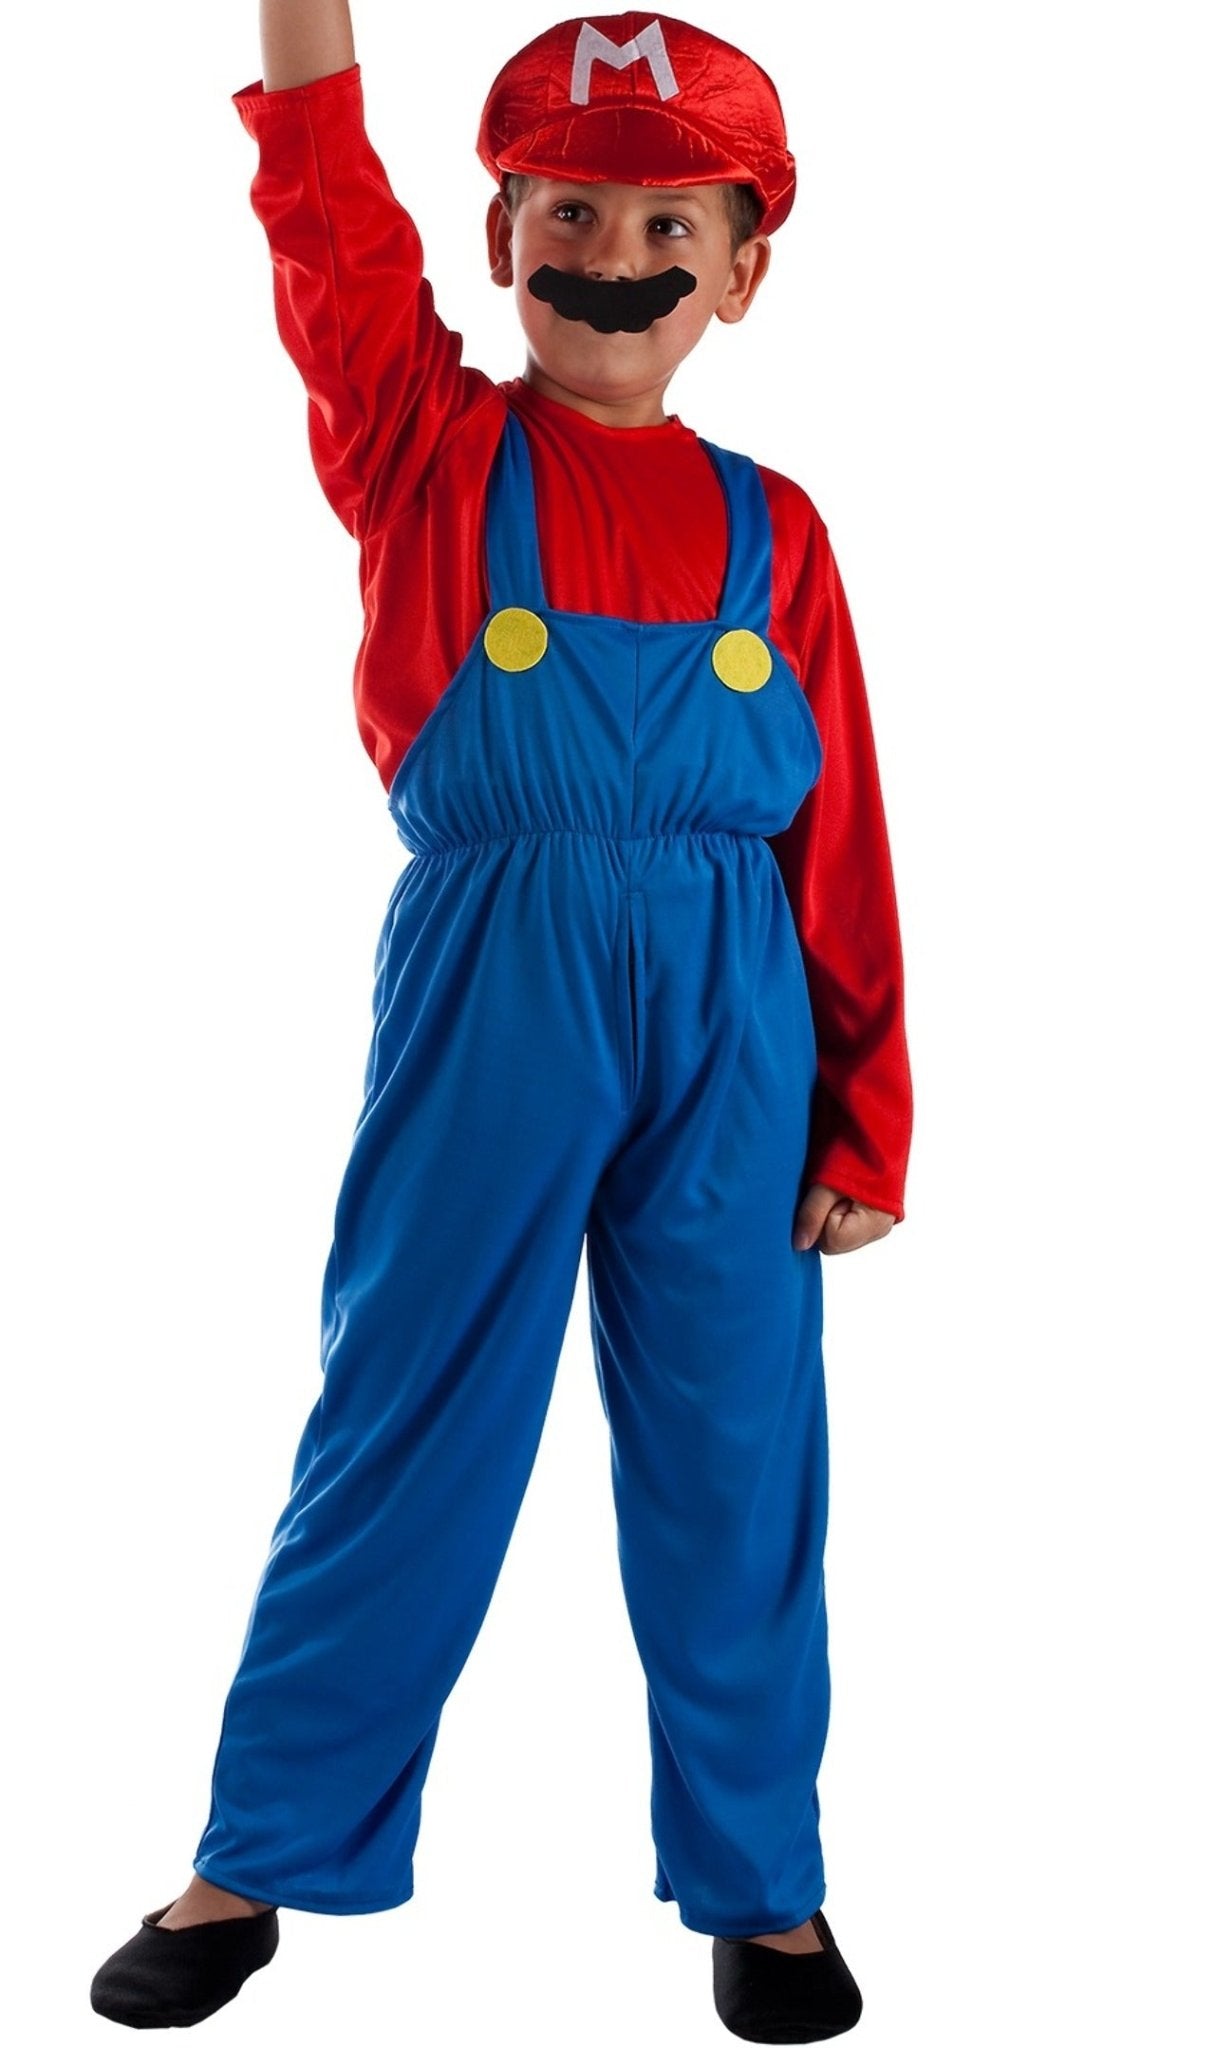 Acquista online il costume di Super Mario Cap per bambino